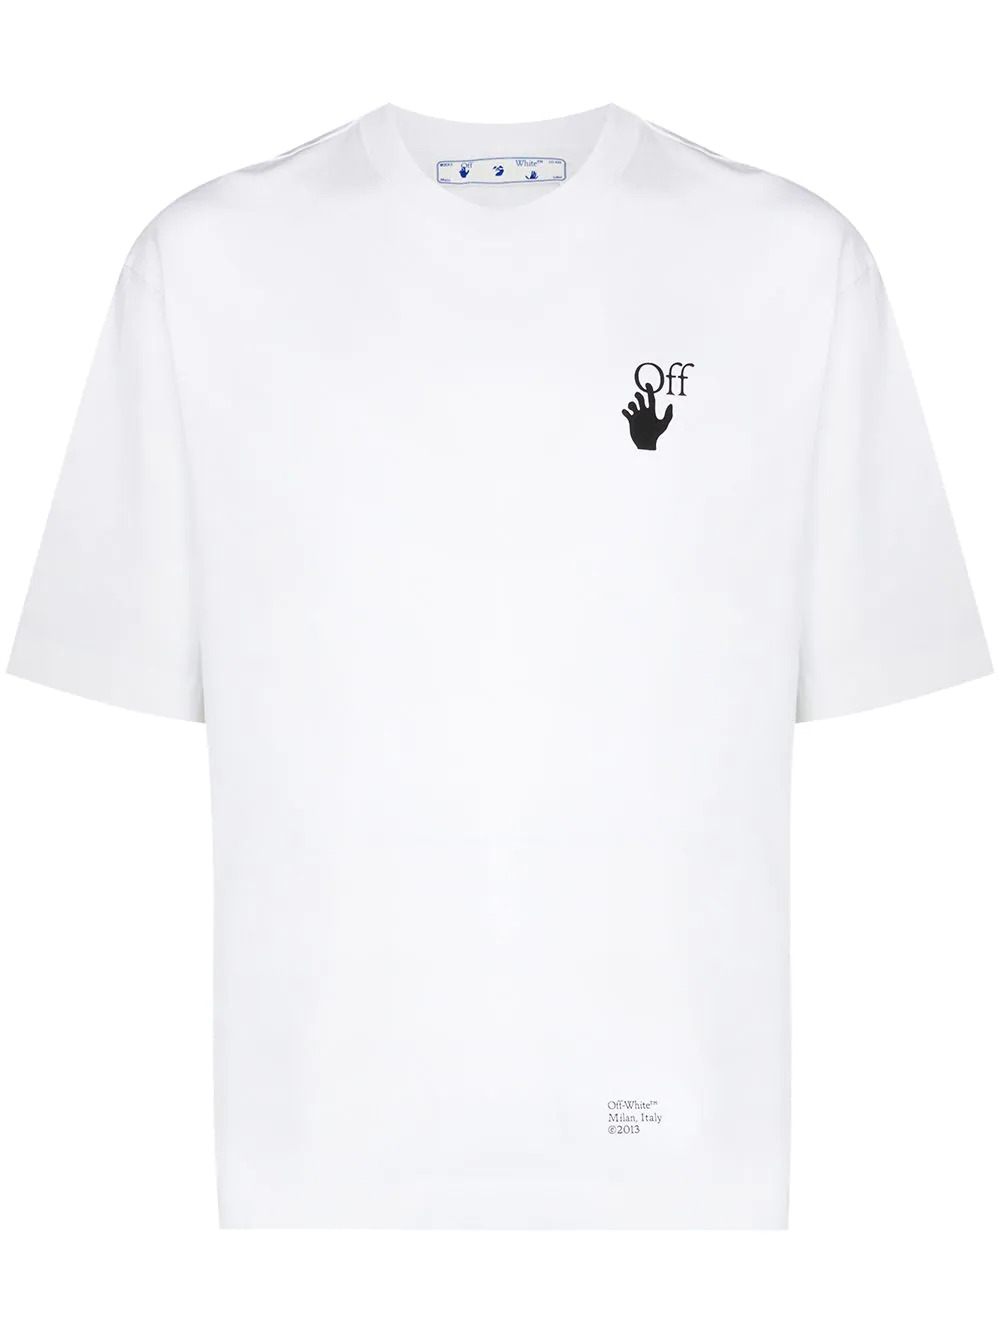 Caravaggio T-Shirt mit Pfeildruck in Weiß